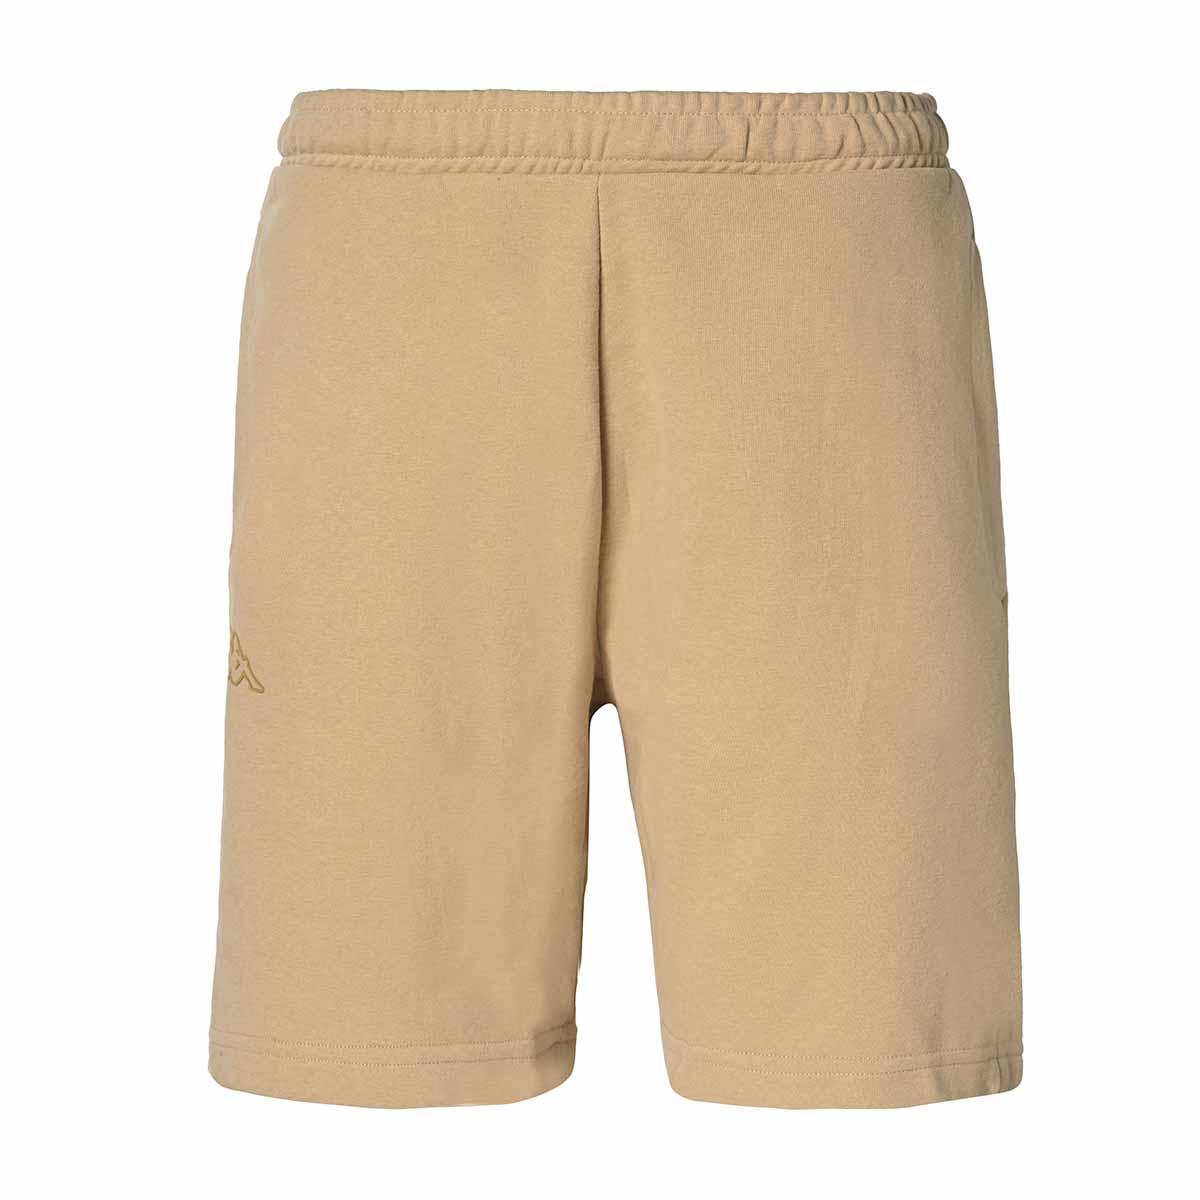 Pantalones cortos Faiano Beige Hombre